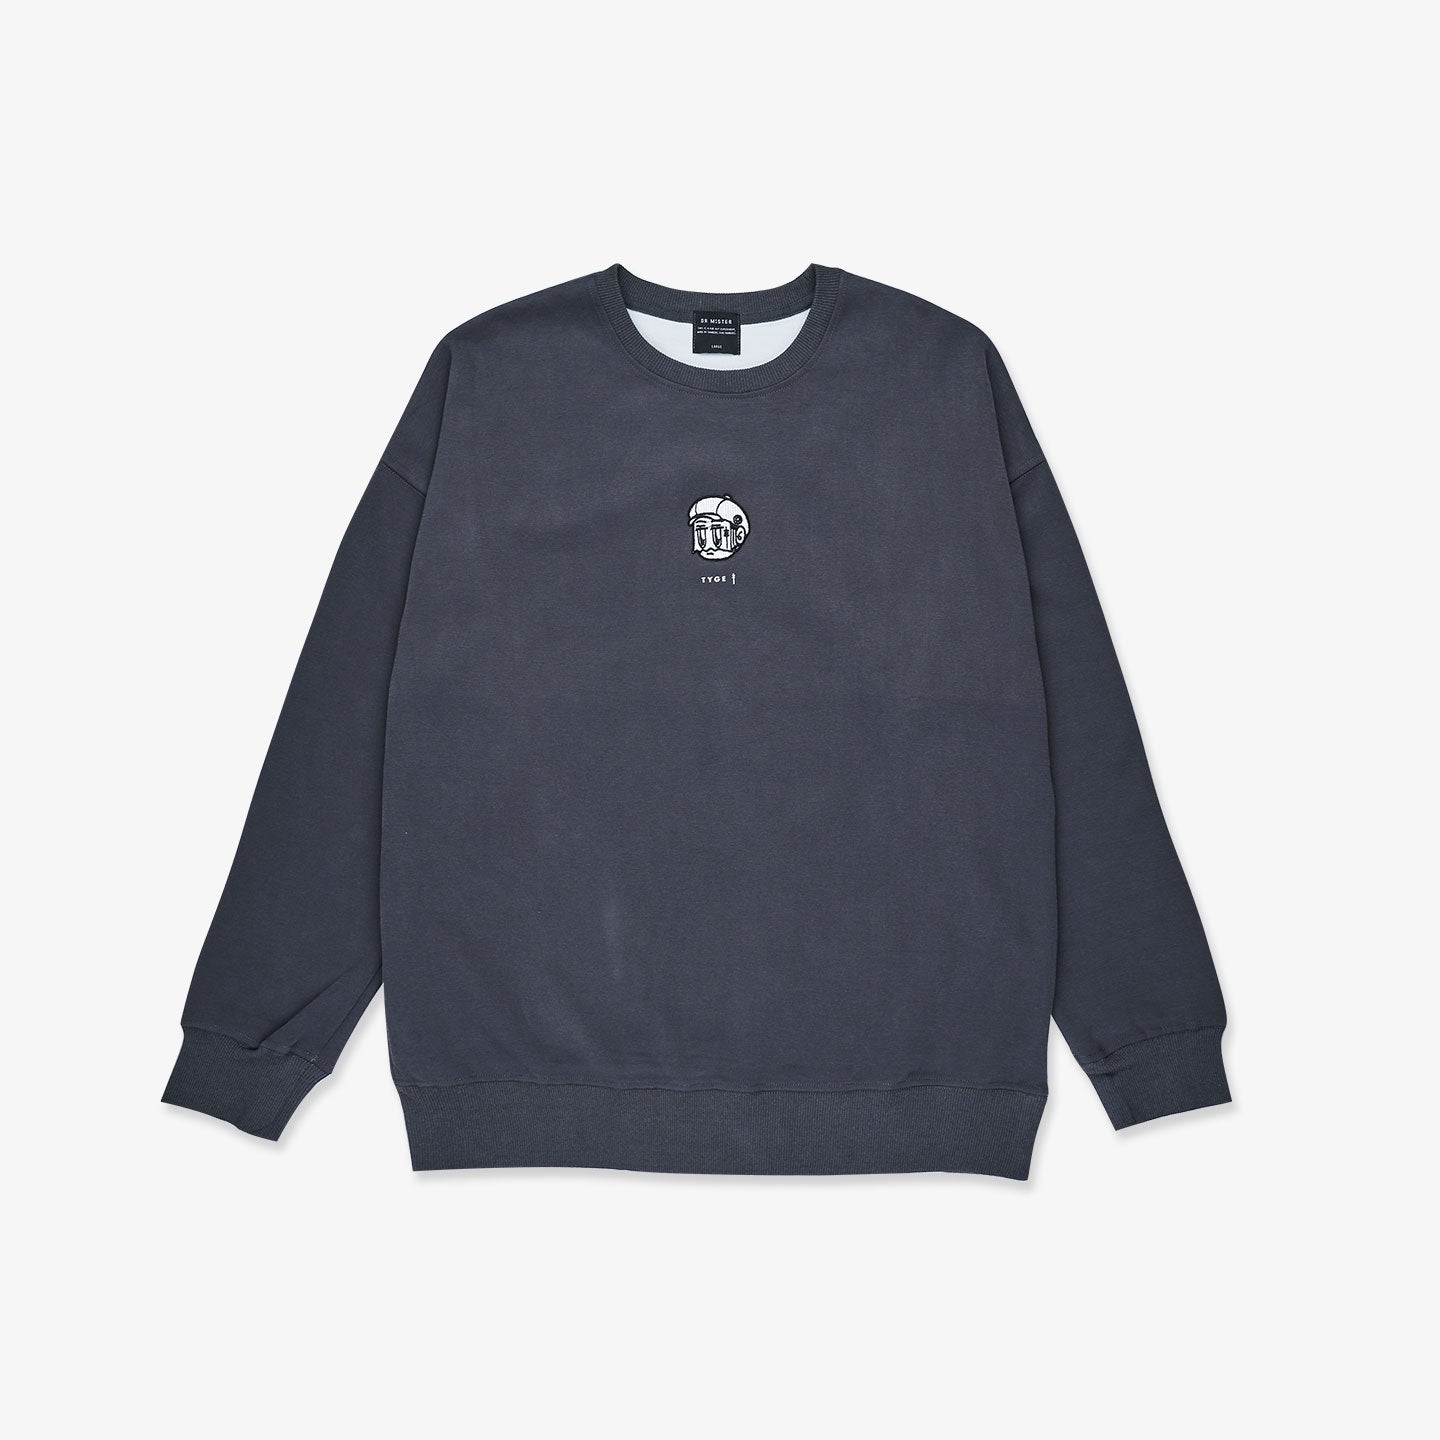 Outset Monochrome Sweatshirt - Grey